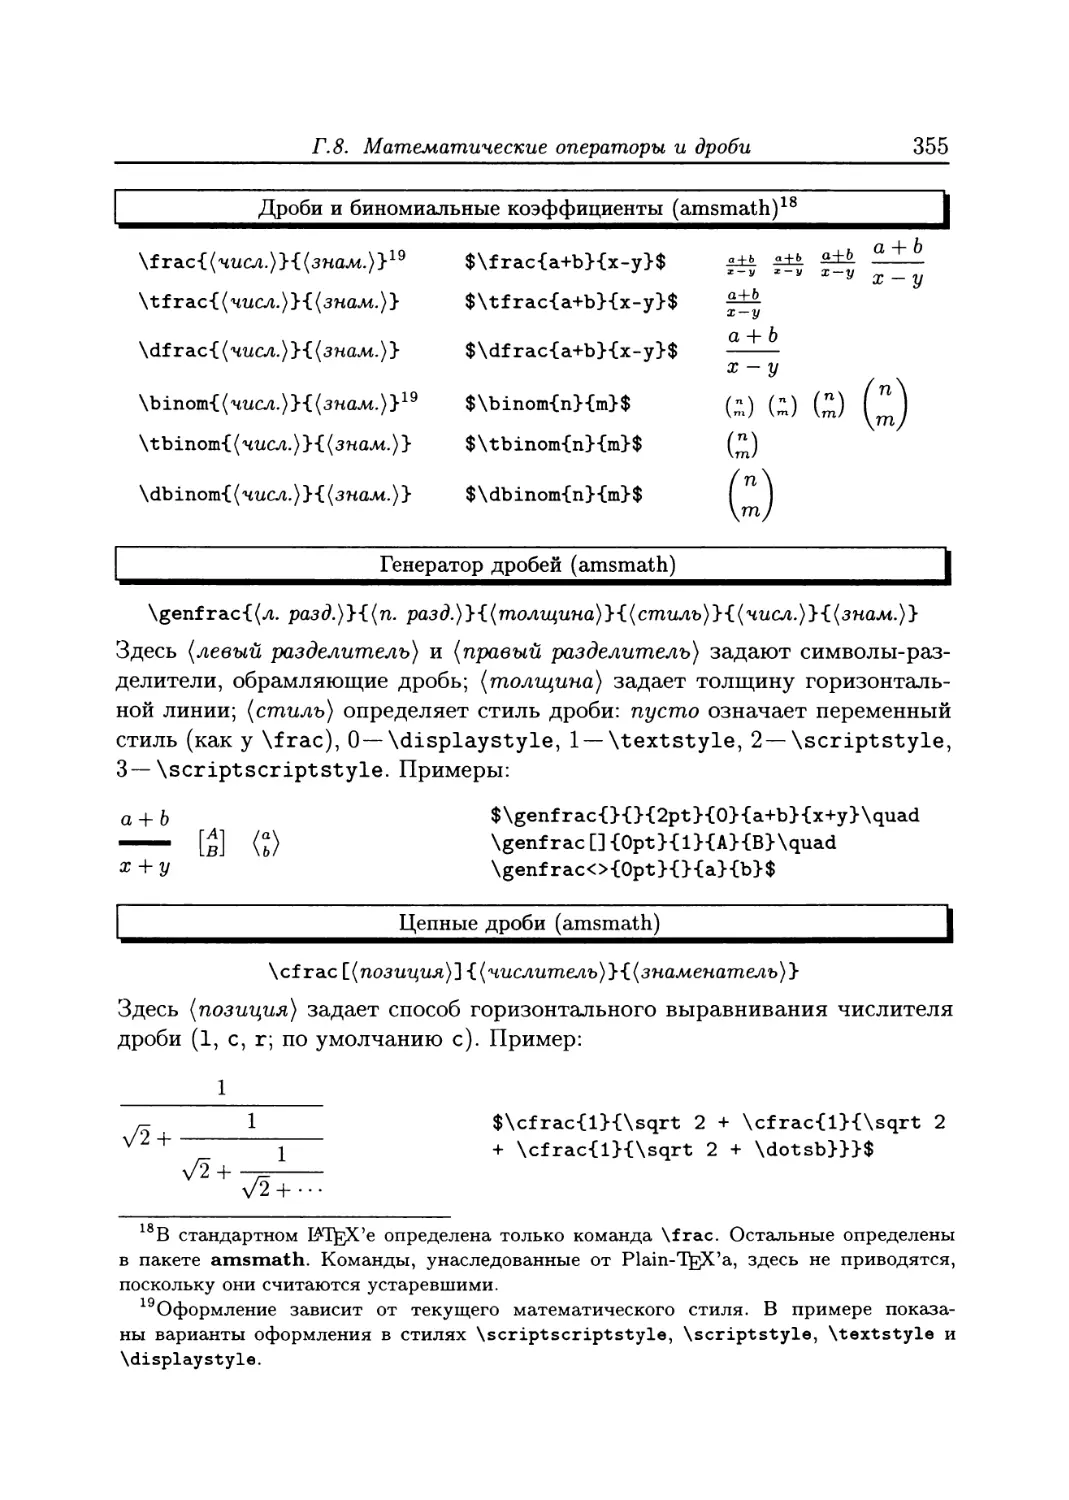 Приложение Г. Справочник основных элементов LATEX'a
Г.2. Управление текстовыми шрифтами